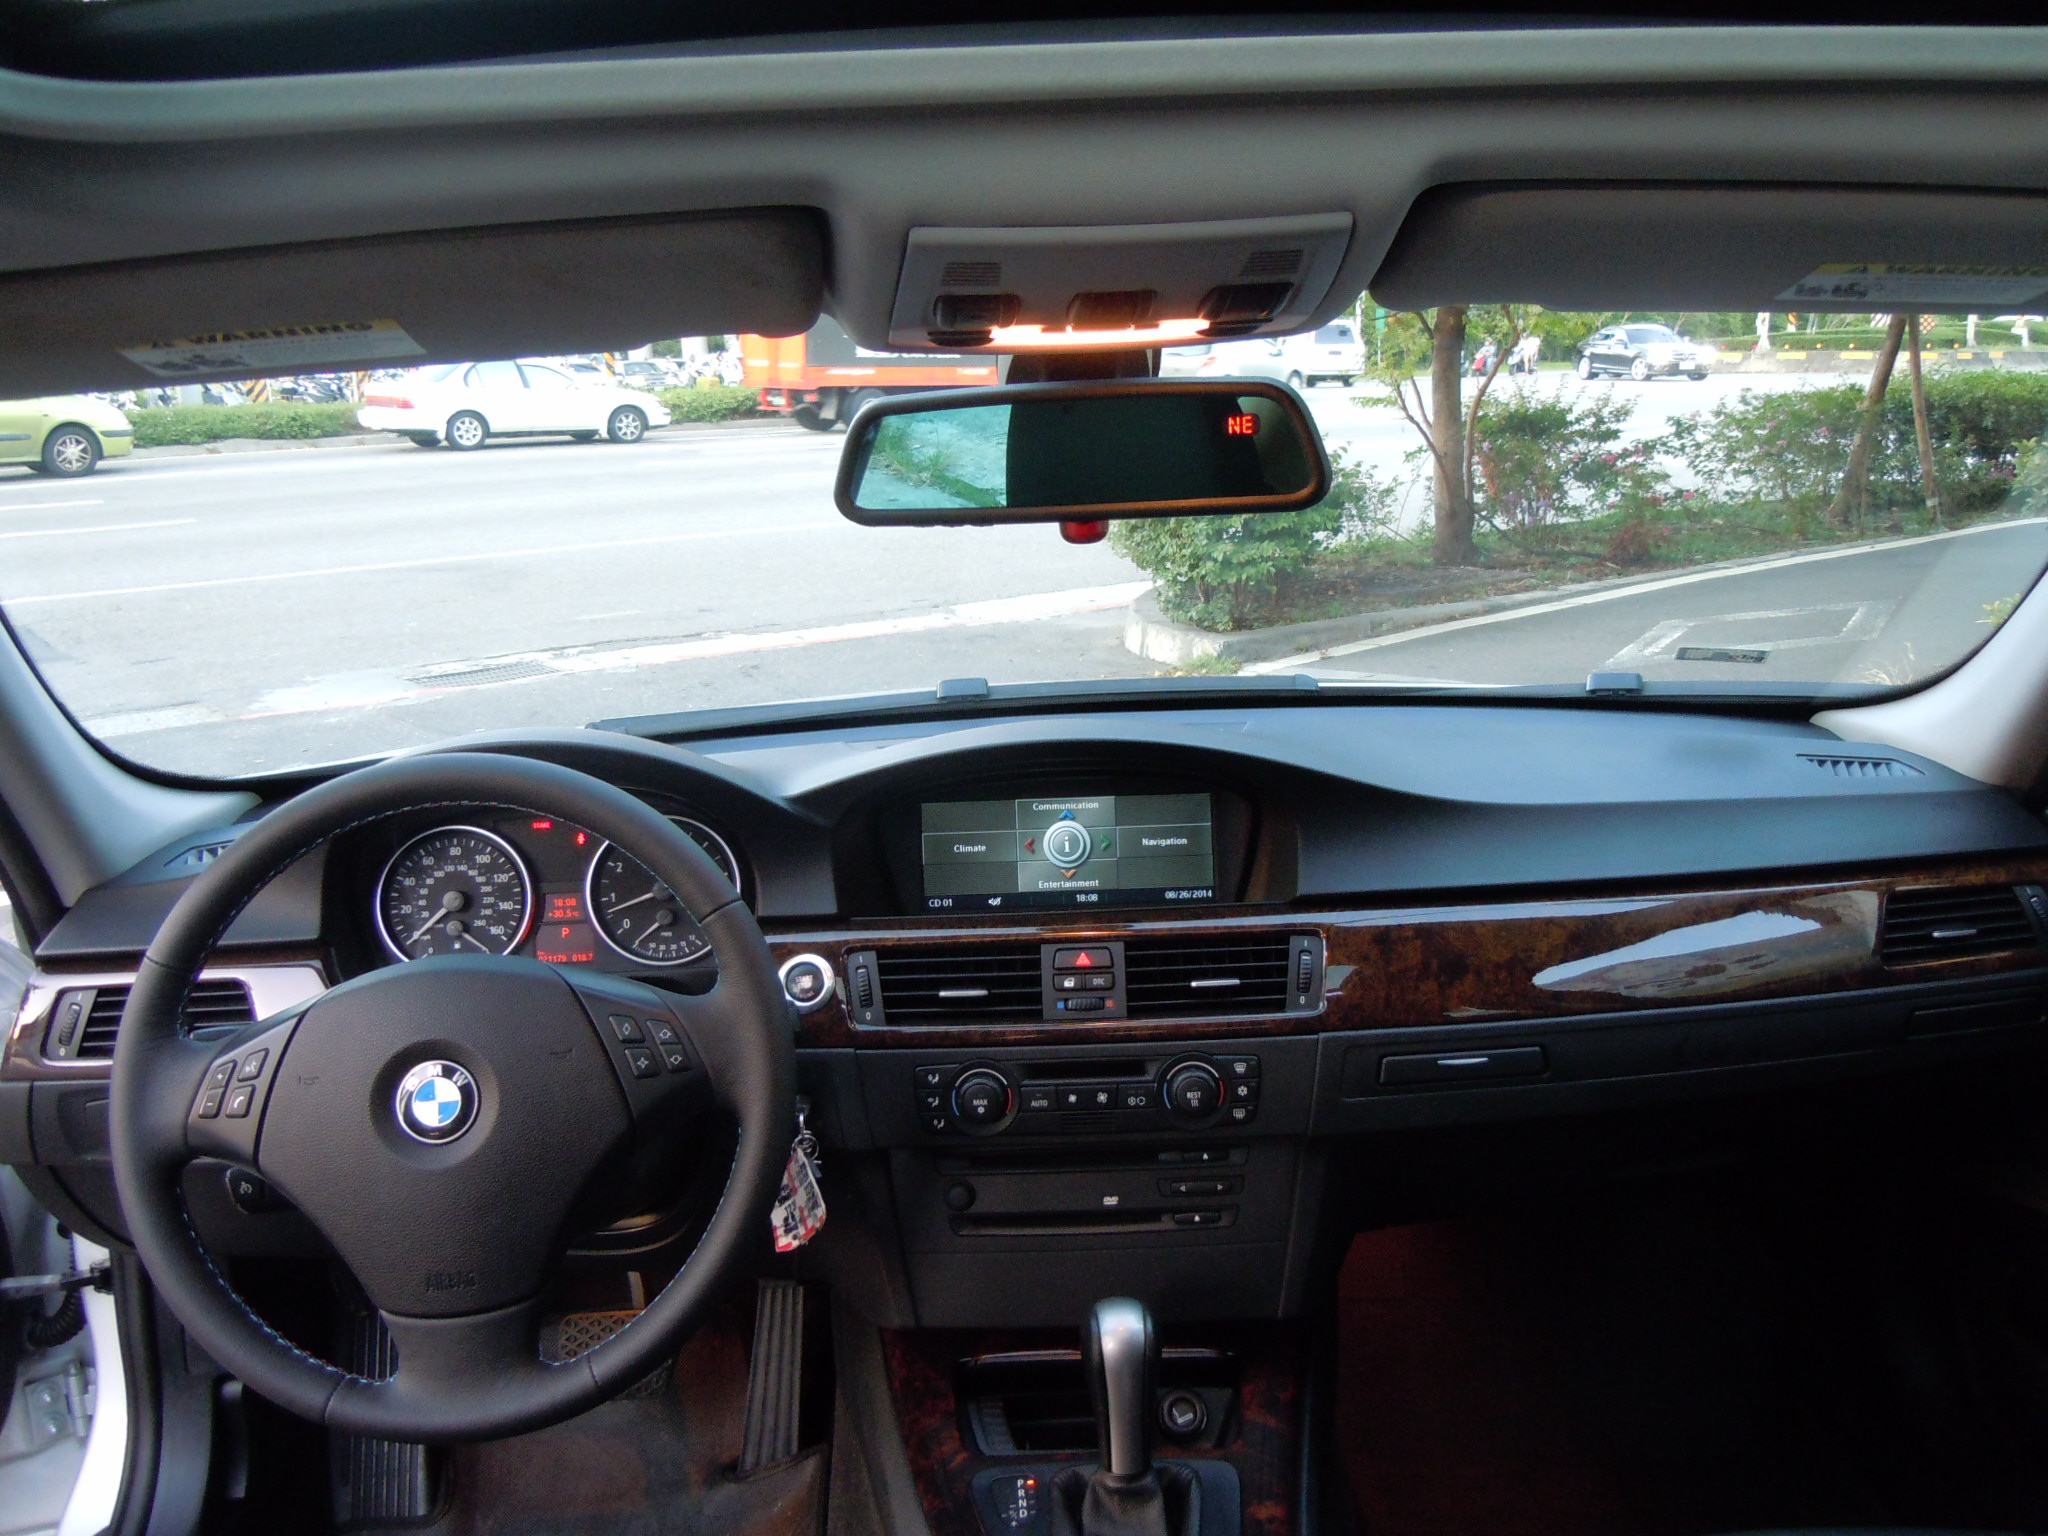 [買車王] 2006 BMW 325i 選配原廠大螢幕 iDrive 自動轉向遠近HID頭燈全車歐洲車容易壞的零件已全更新提供其他車商不敢做的優質保固 - 20160916165955-17432155.JPG(圖)